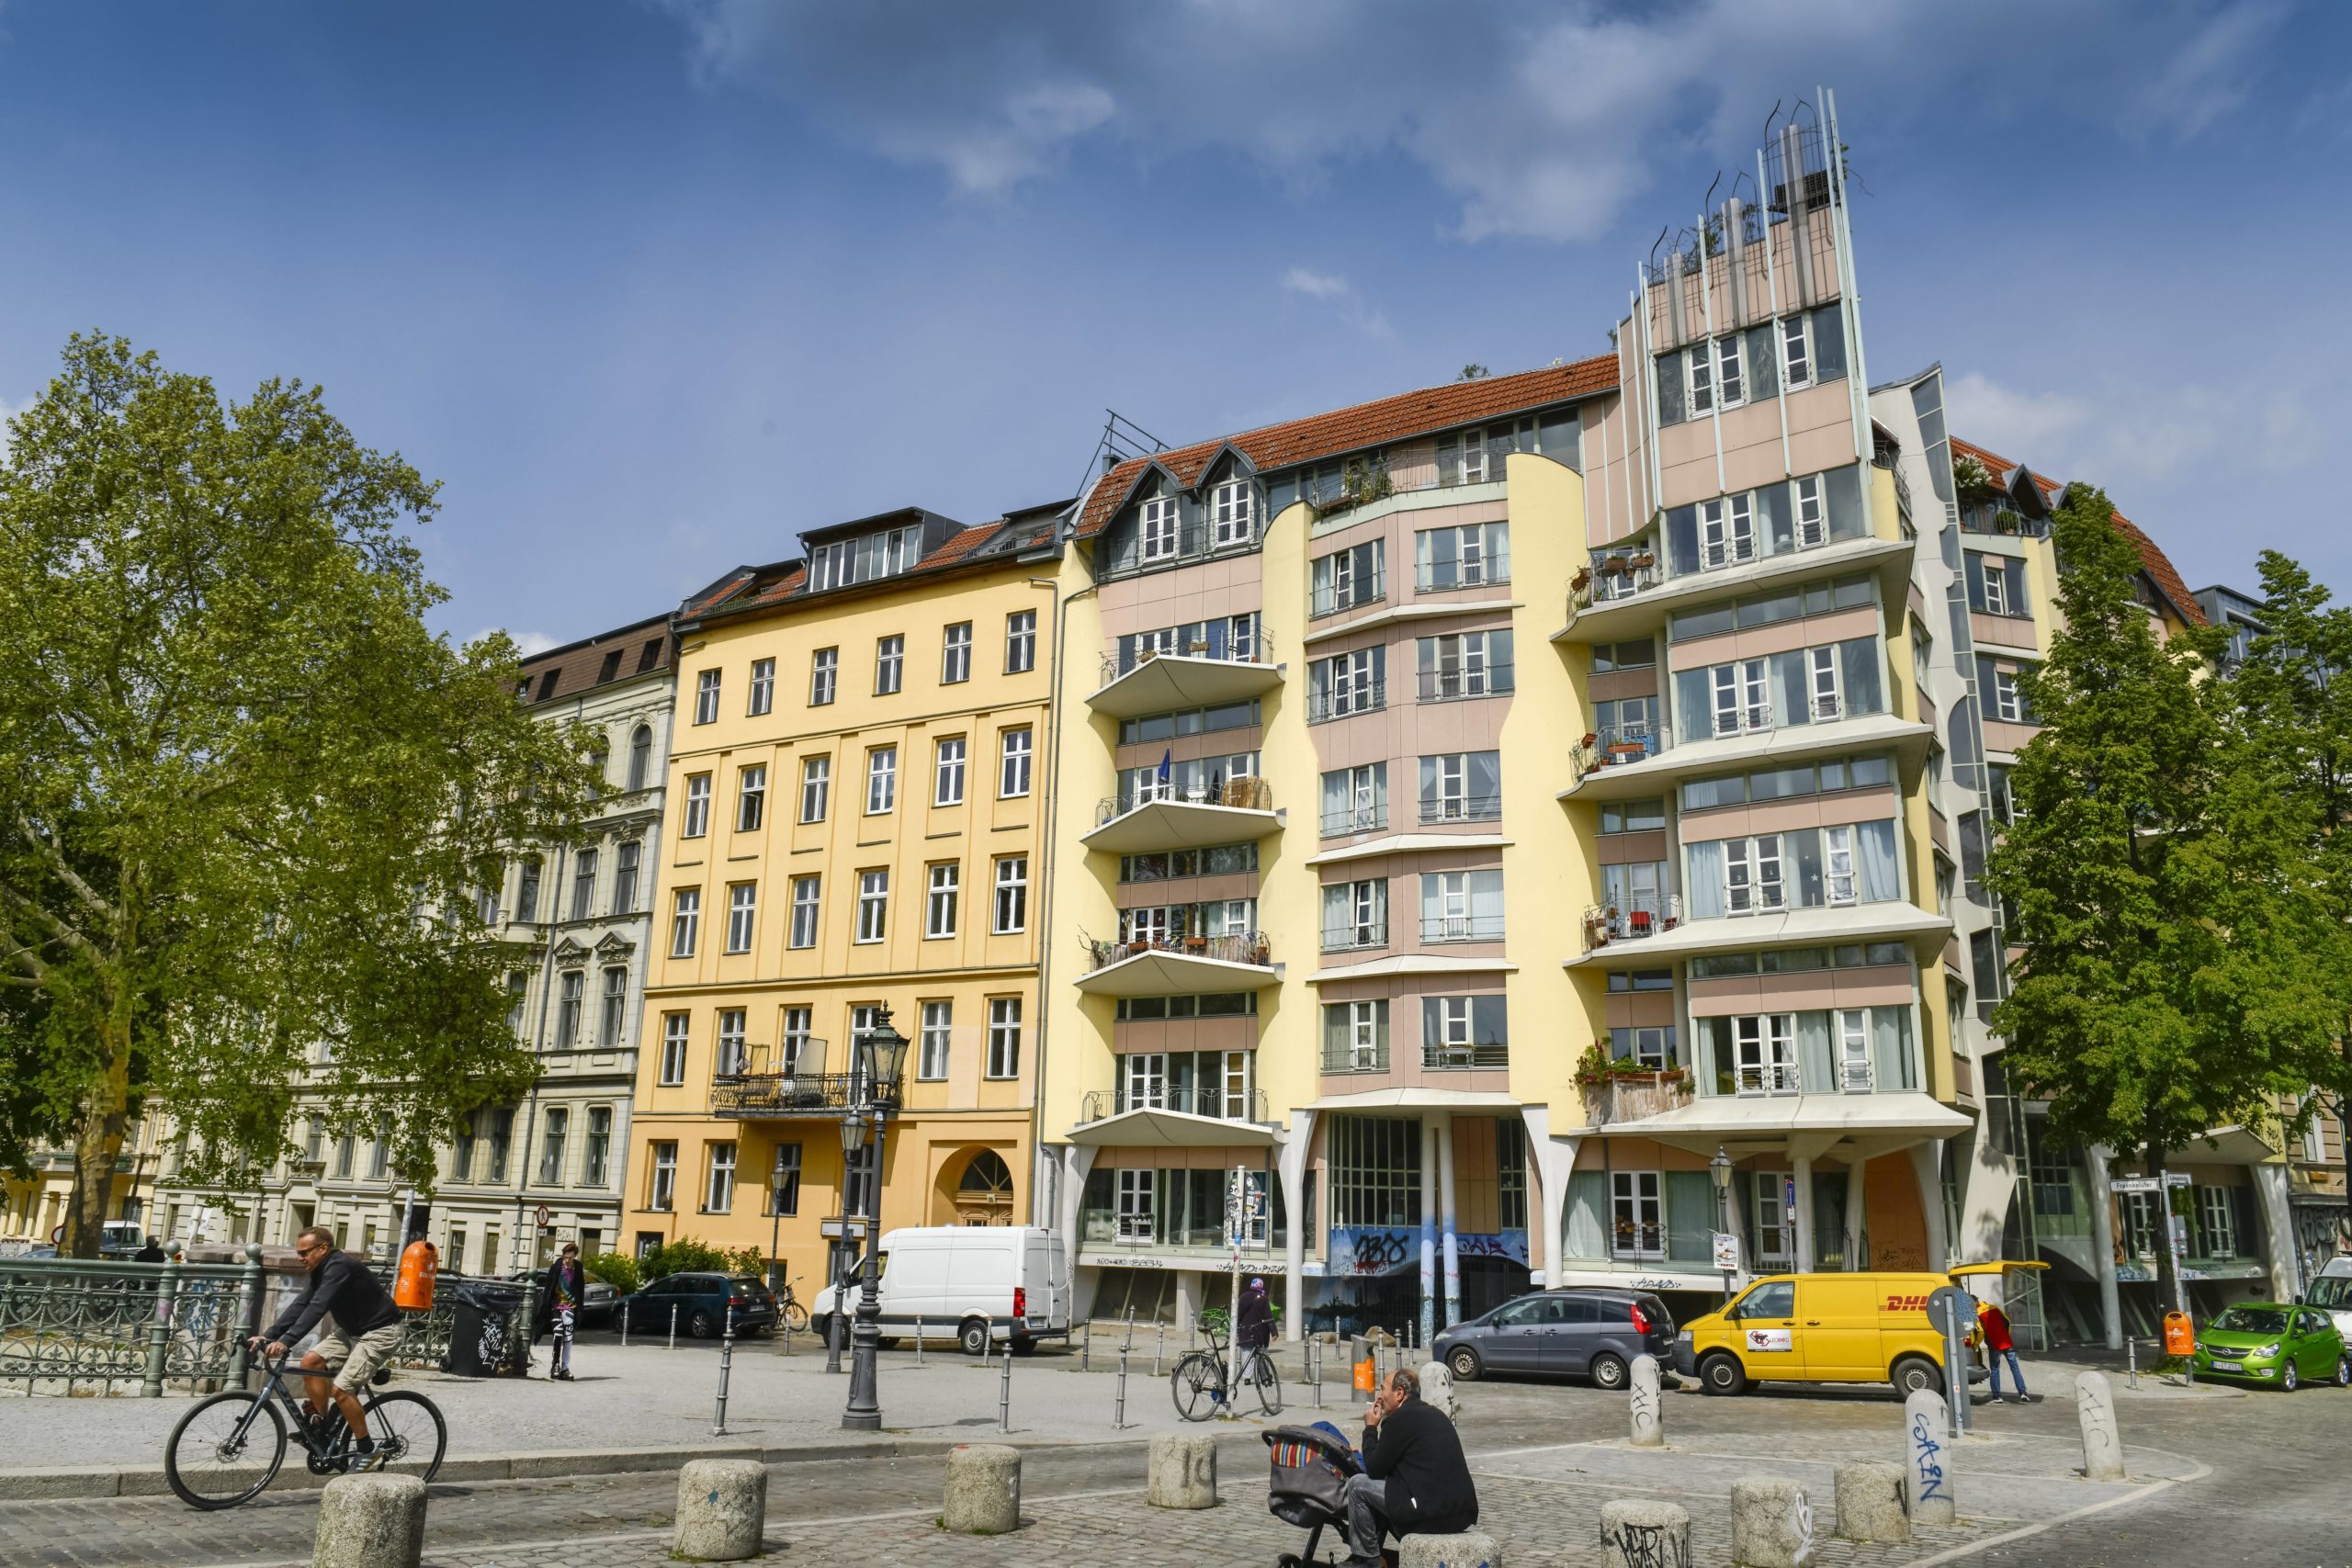 Man liebt oder hasst diese Architektur: Wohnhaus von Hinrich Baller an der Admiralbrücke in Kreuzberg. Foto: Imago/Schöning